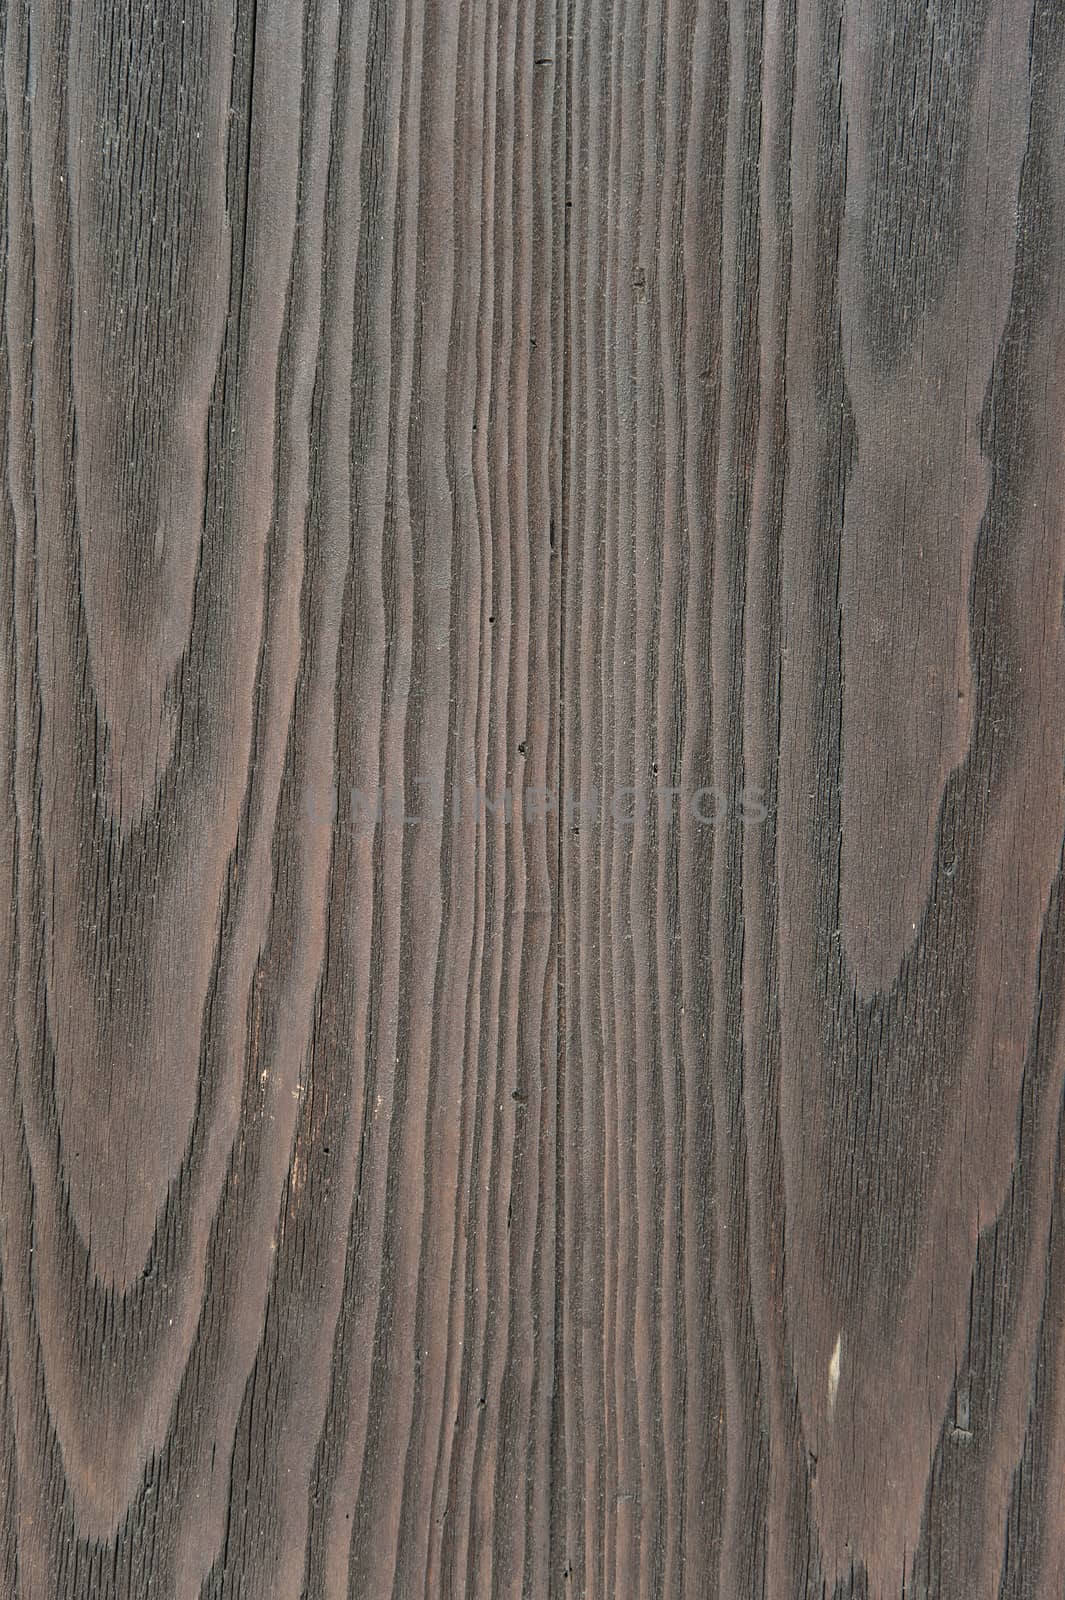 Dark wood texture by cla78